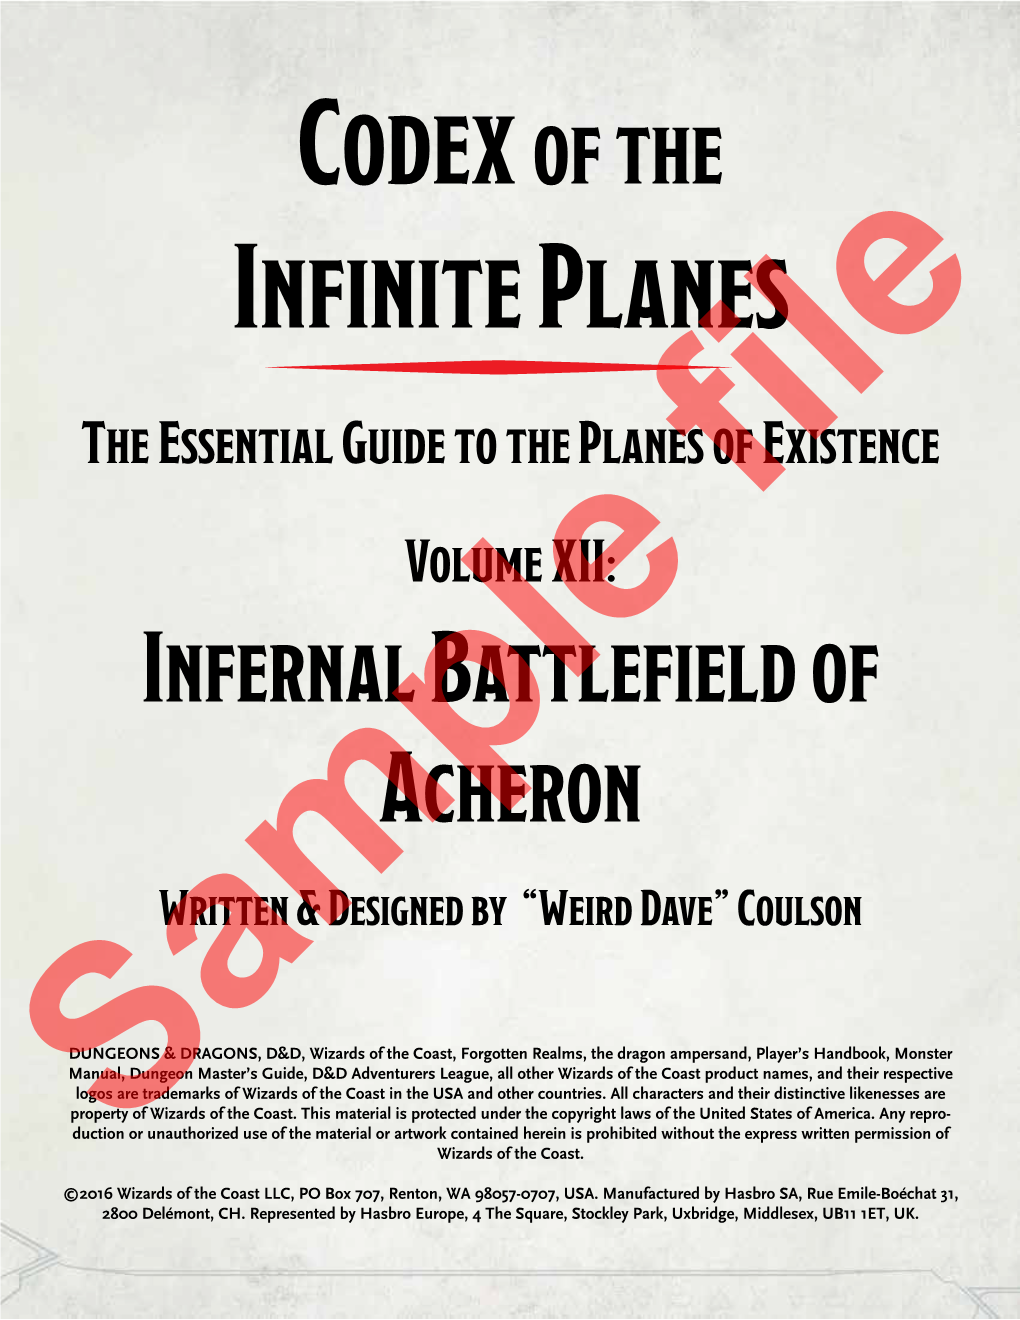 Infernal Battlefield of Acheron Written & Designed by “Weird Dave” Coulson